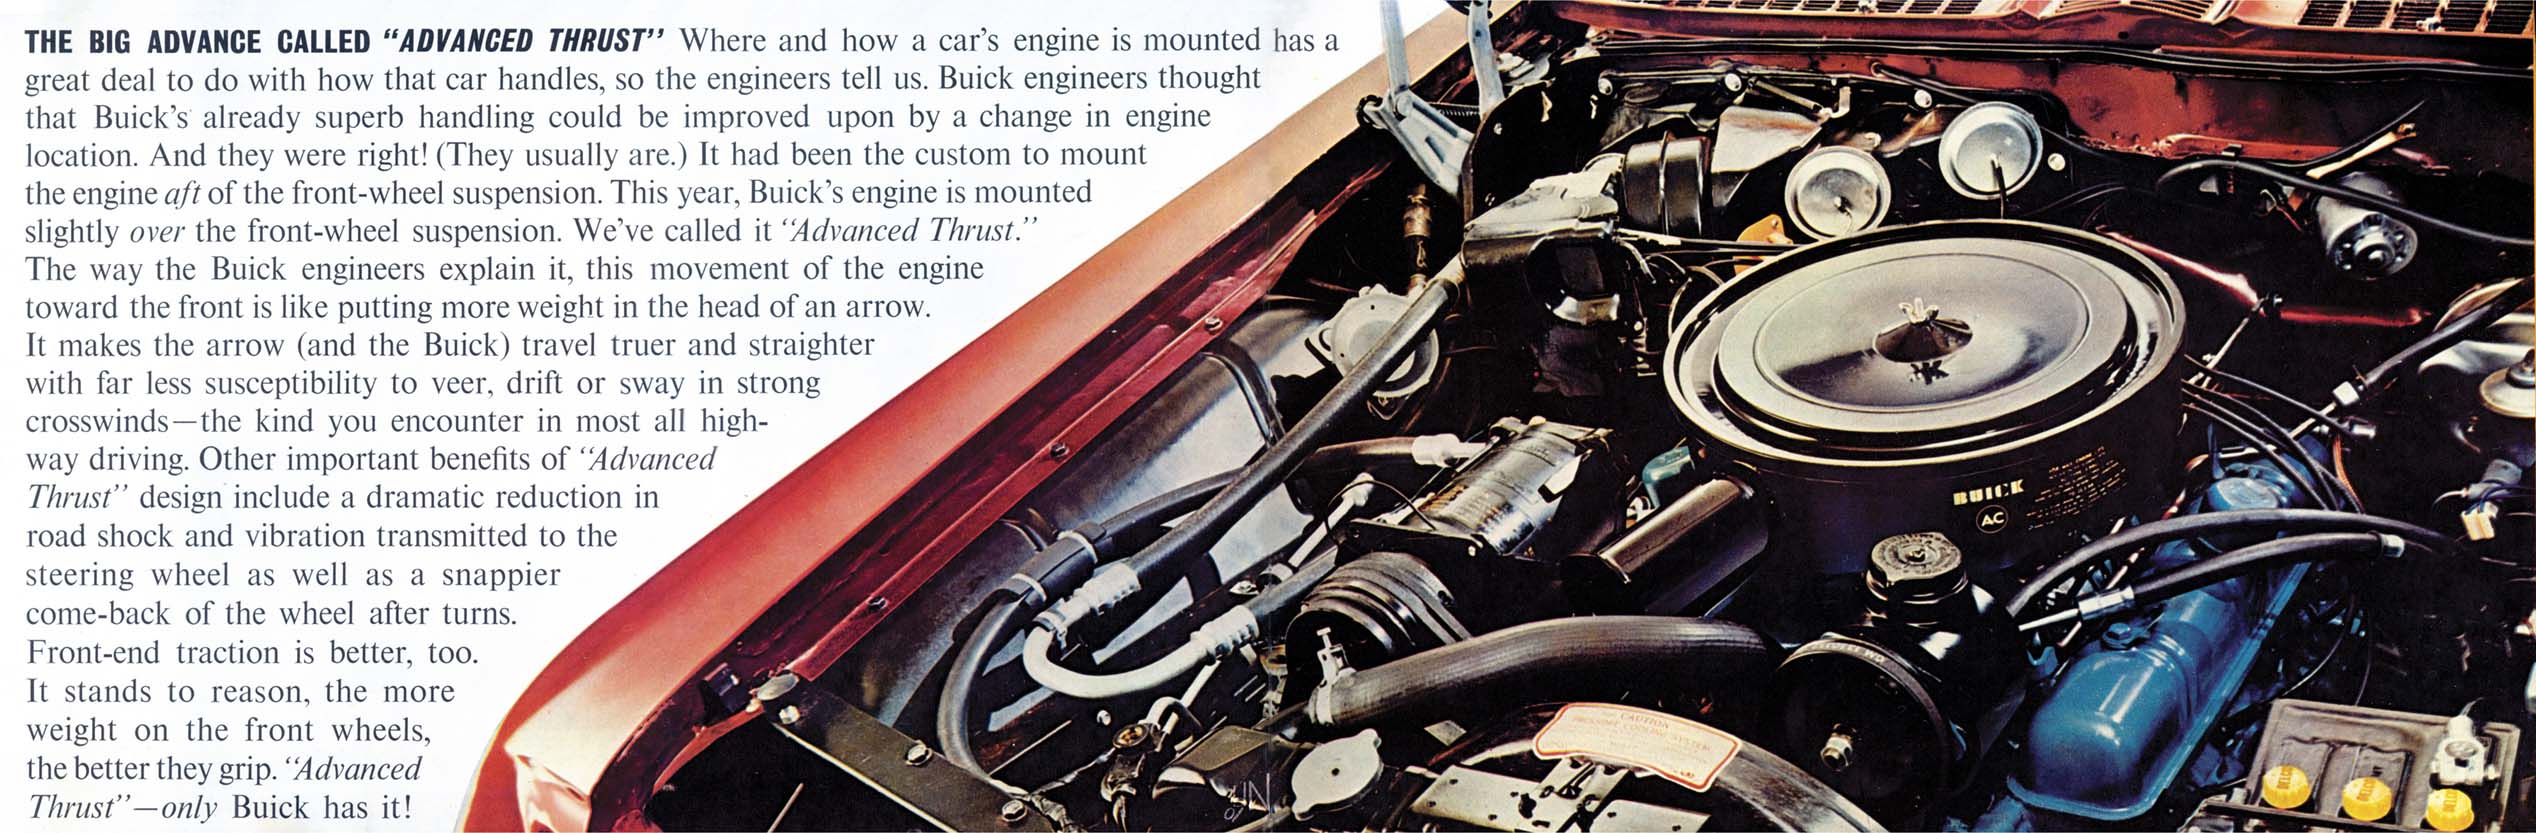 1962 Buick Full Line-24-25